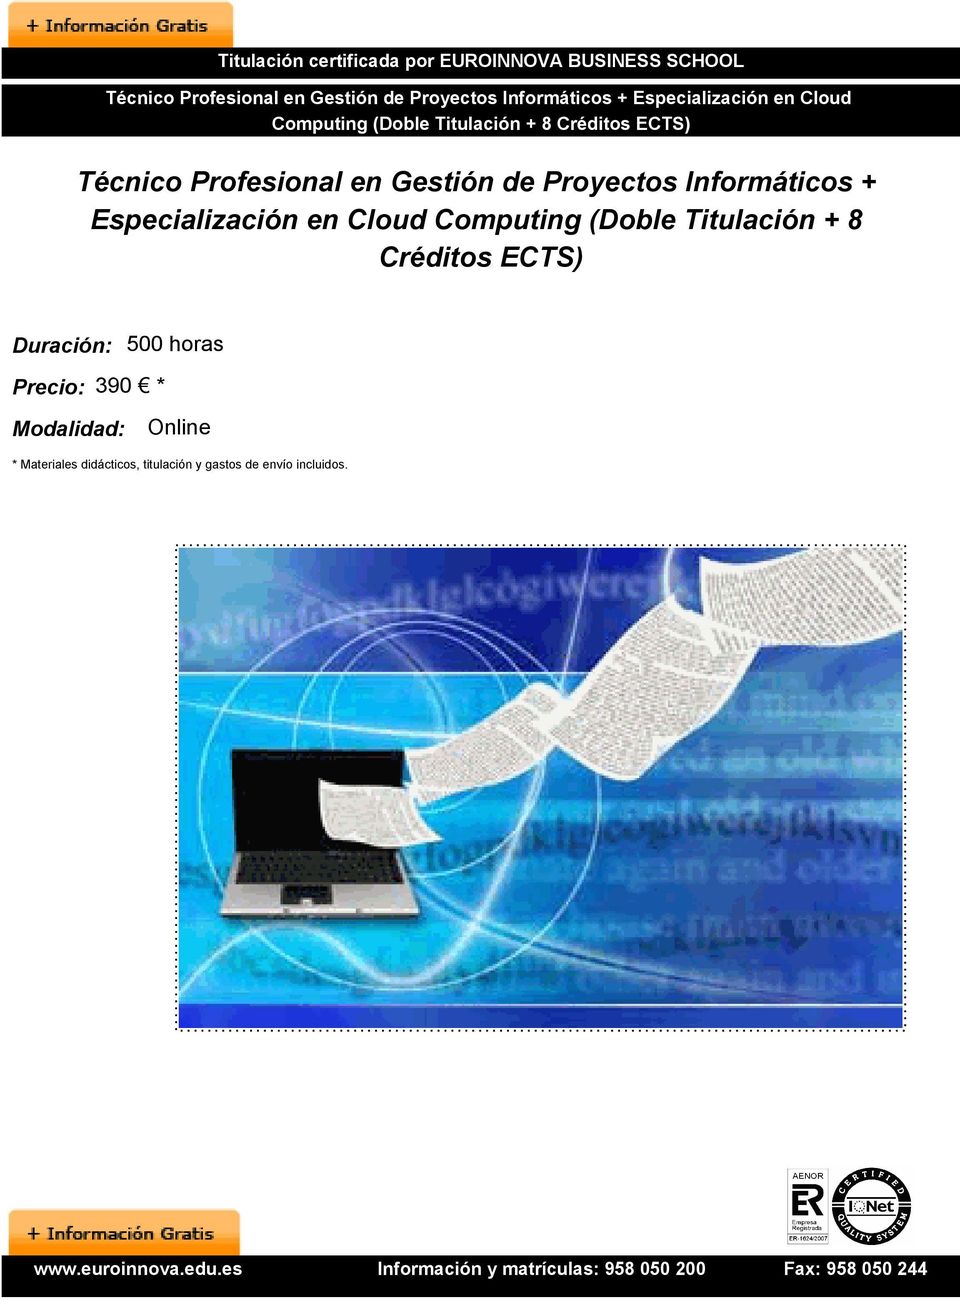 Informáticos + Especialización en Cloud Computing (Doble Titulación + 8 Créditos ECTS) Duración: